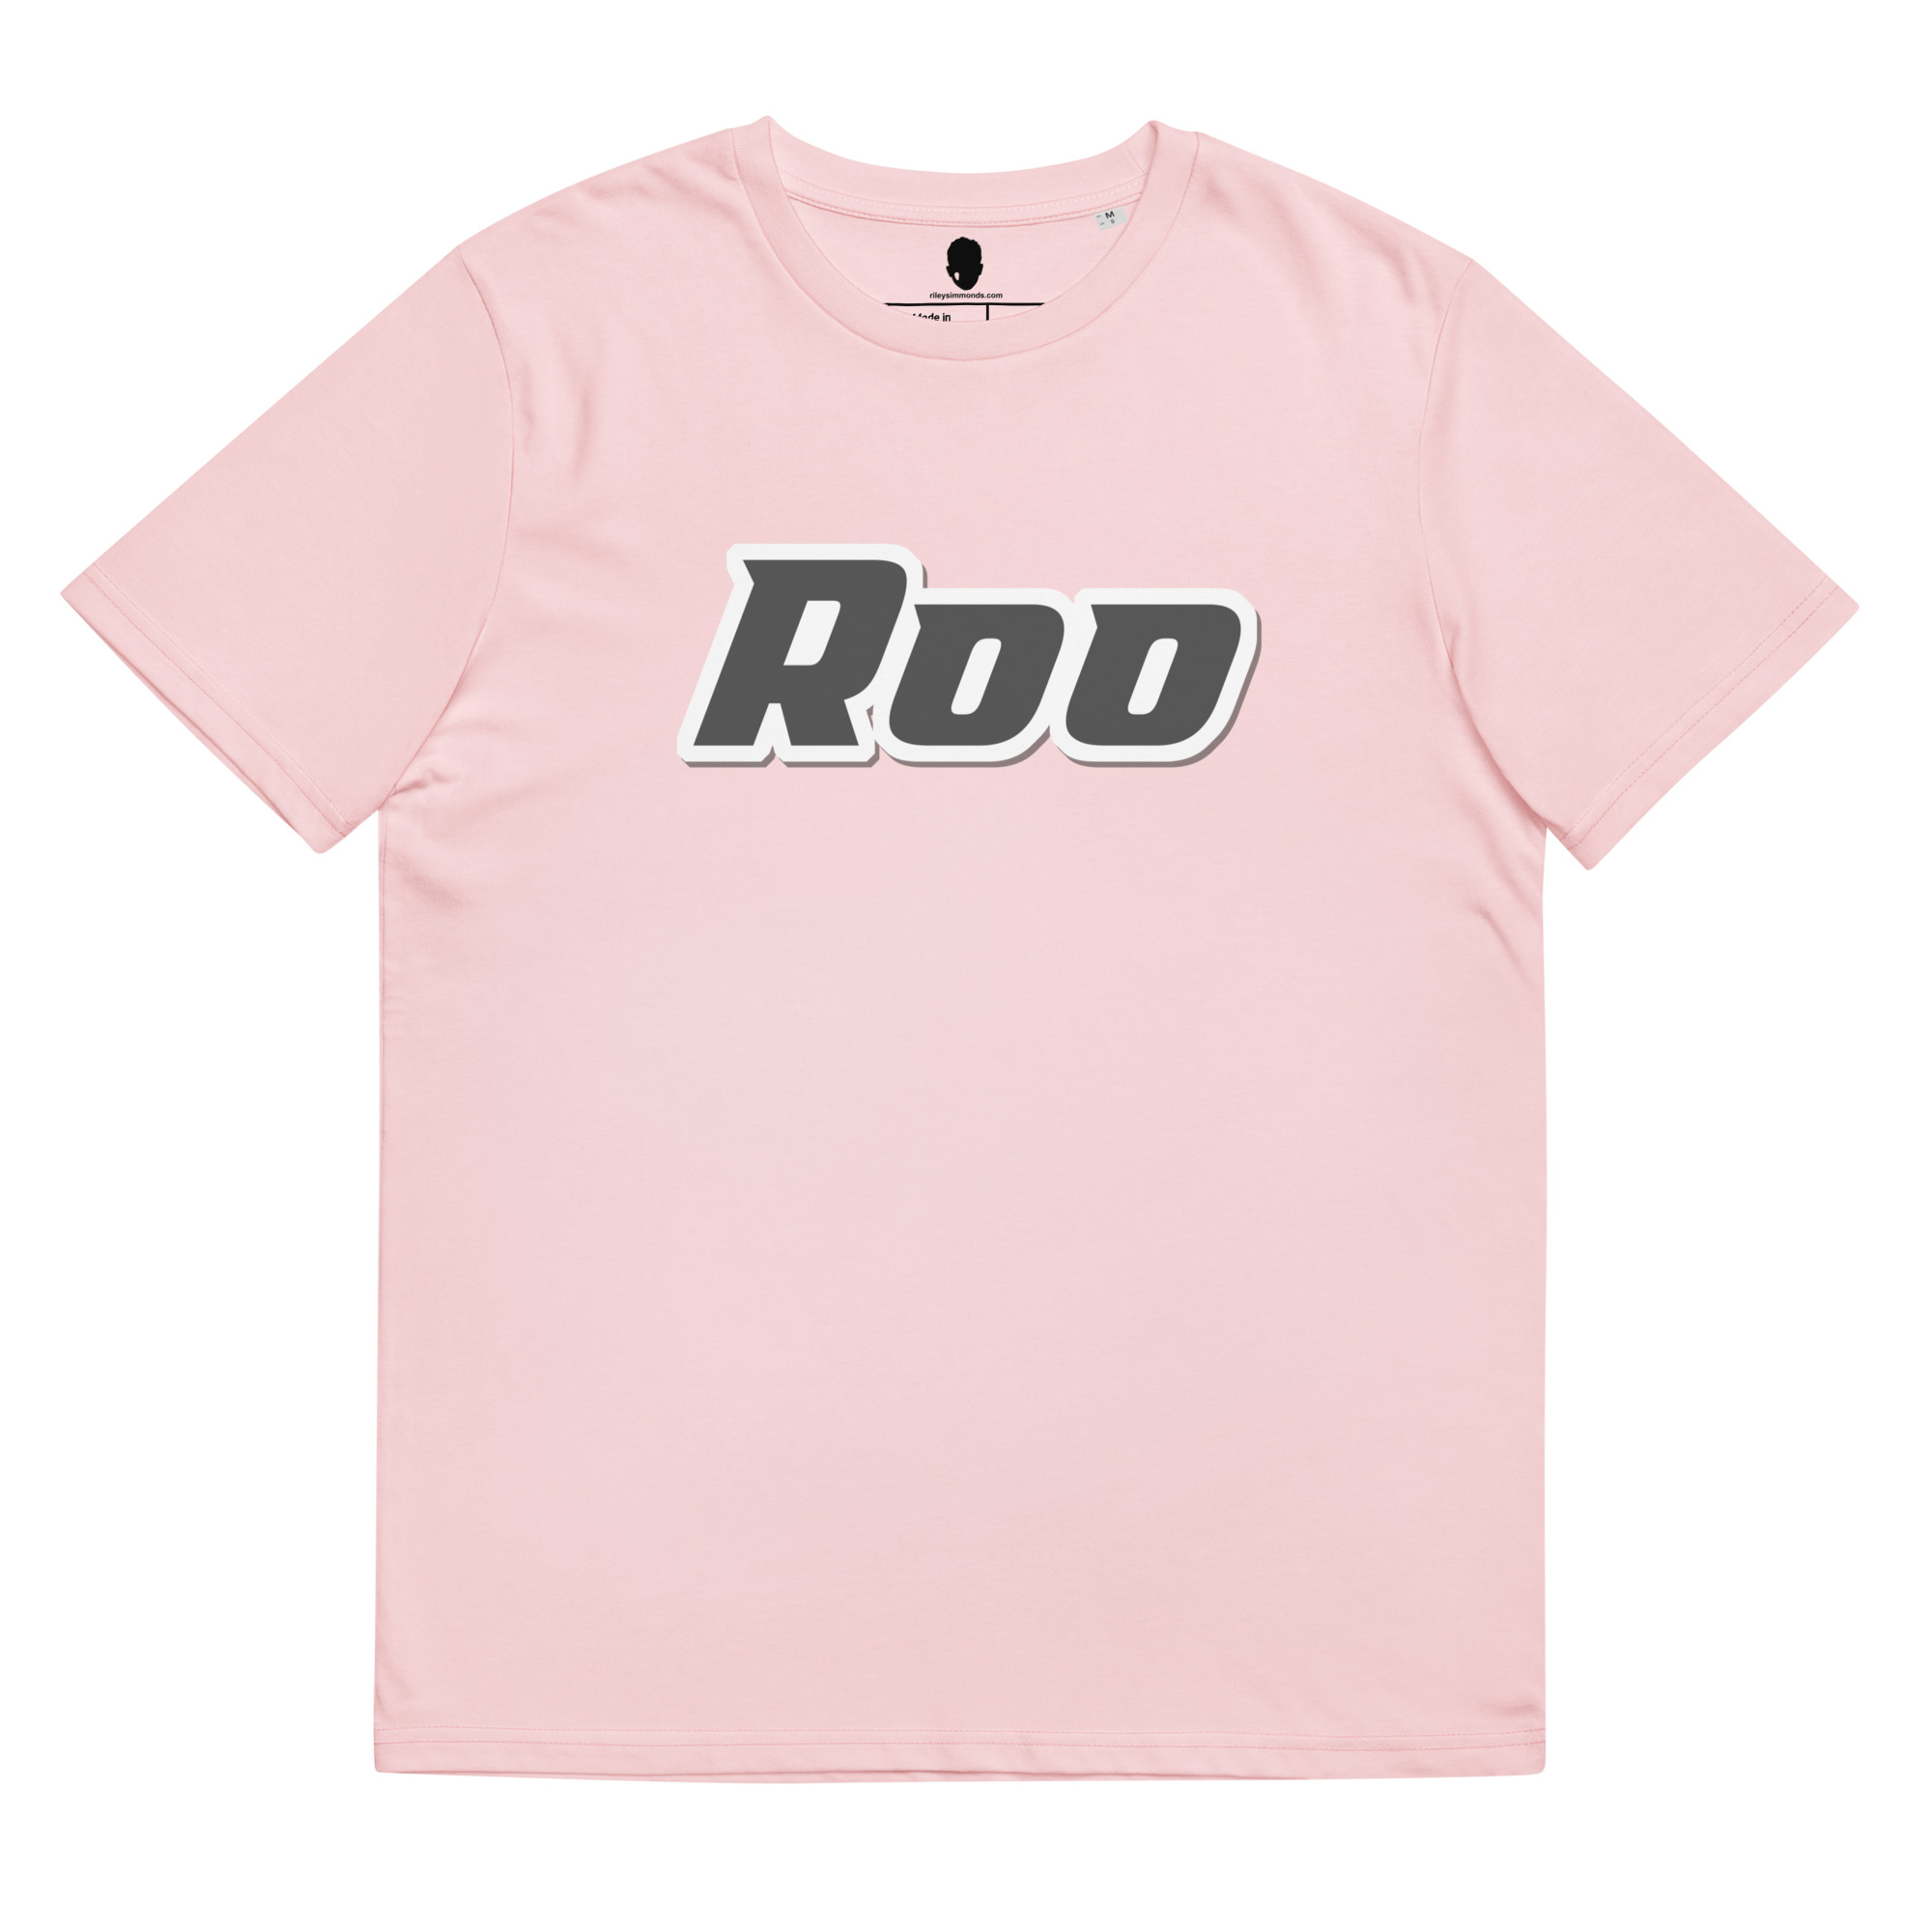 unisex-organic-cotton-t-shirt-cotton-pink-front-6522a8df96b0a.jpg